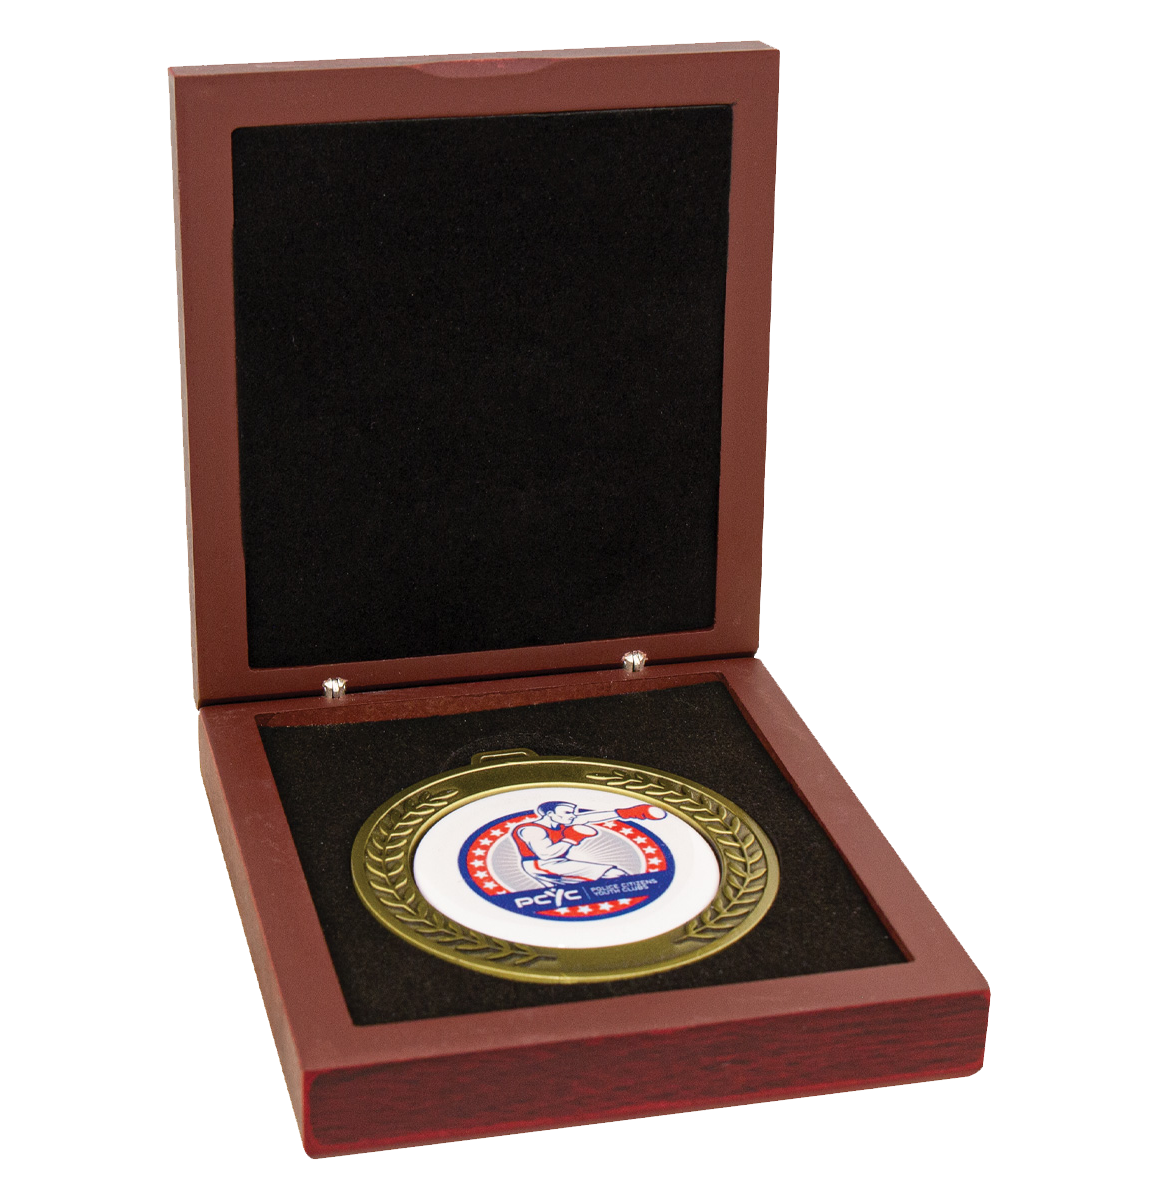 70mm Premium Rosewood Timber Medal Box